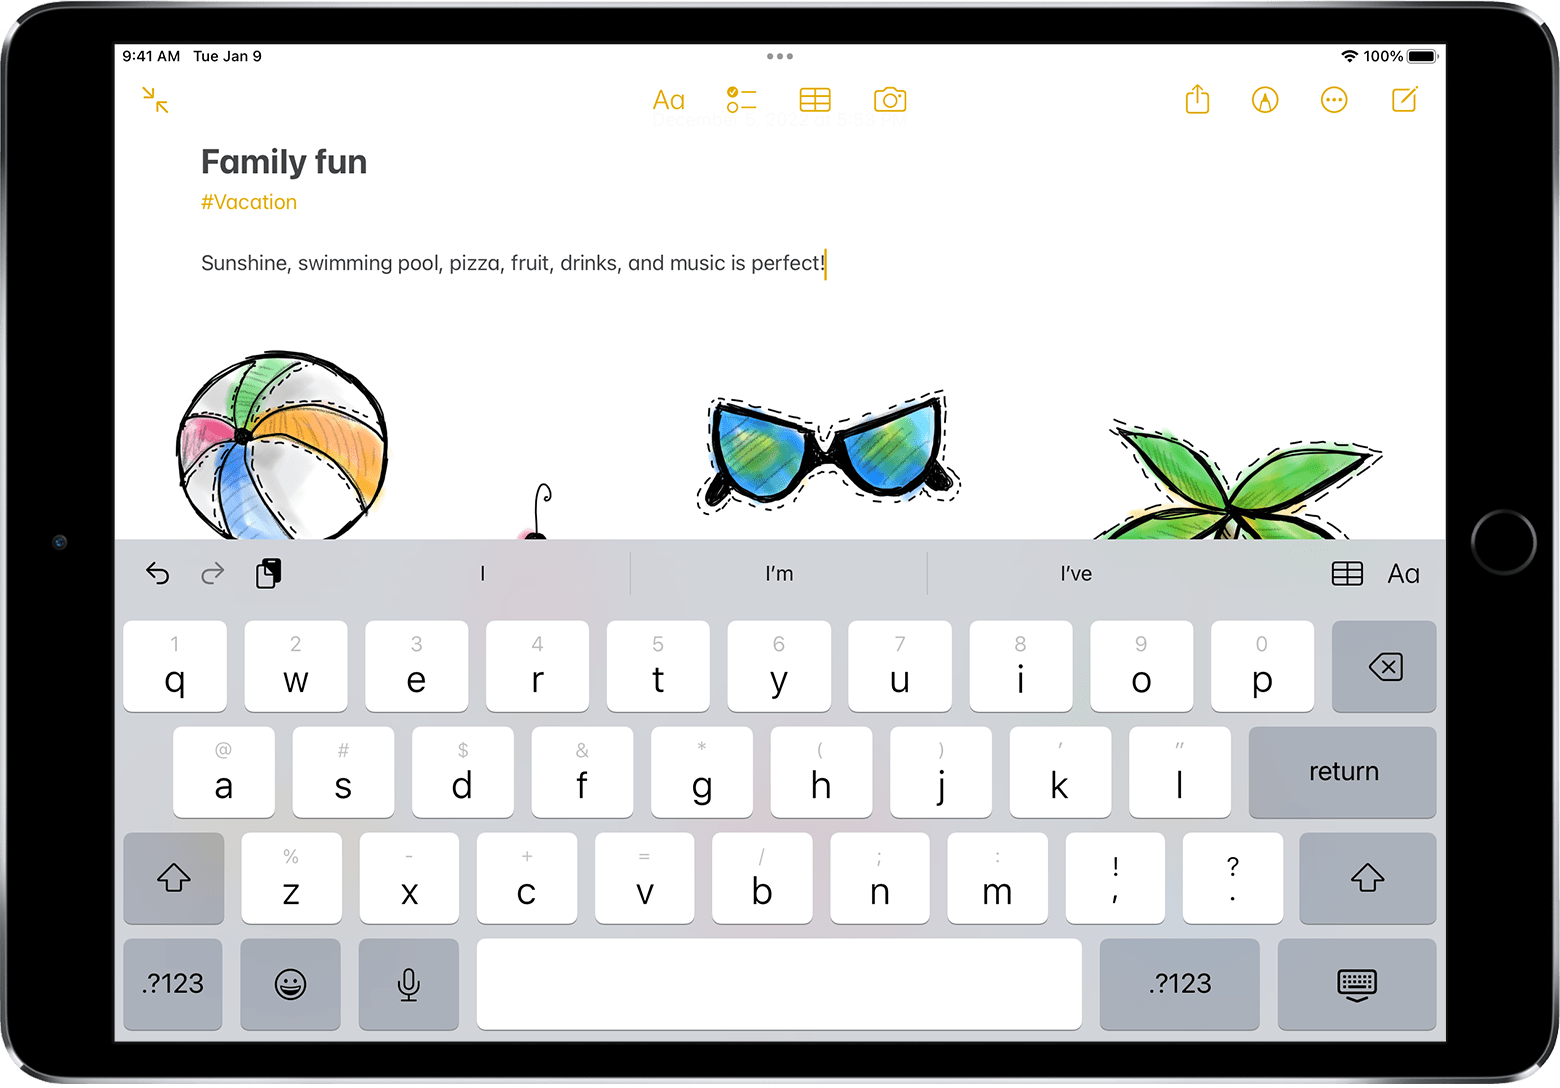 Usar el teclado flotante en el iPad - Soporte técnico de Apple (MX)